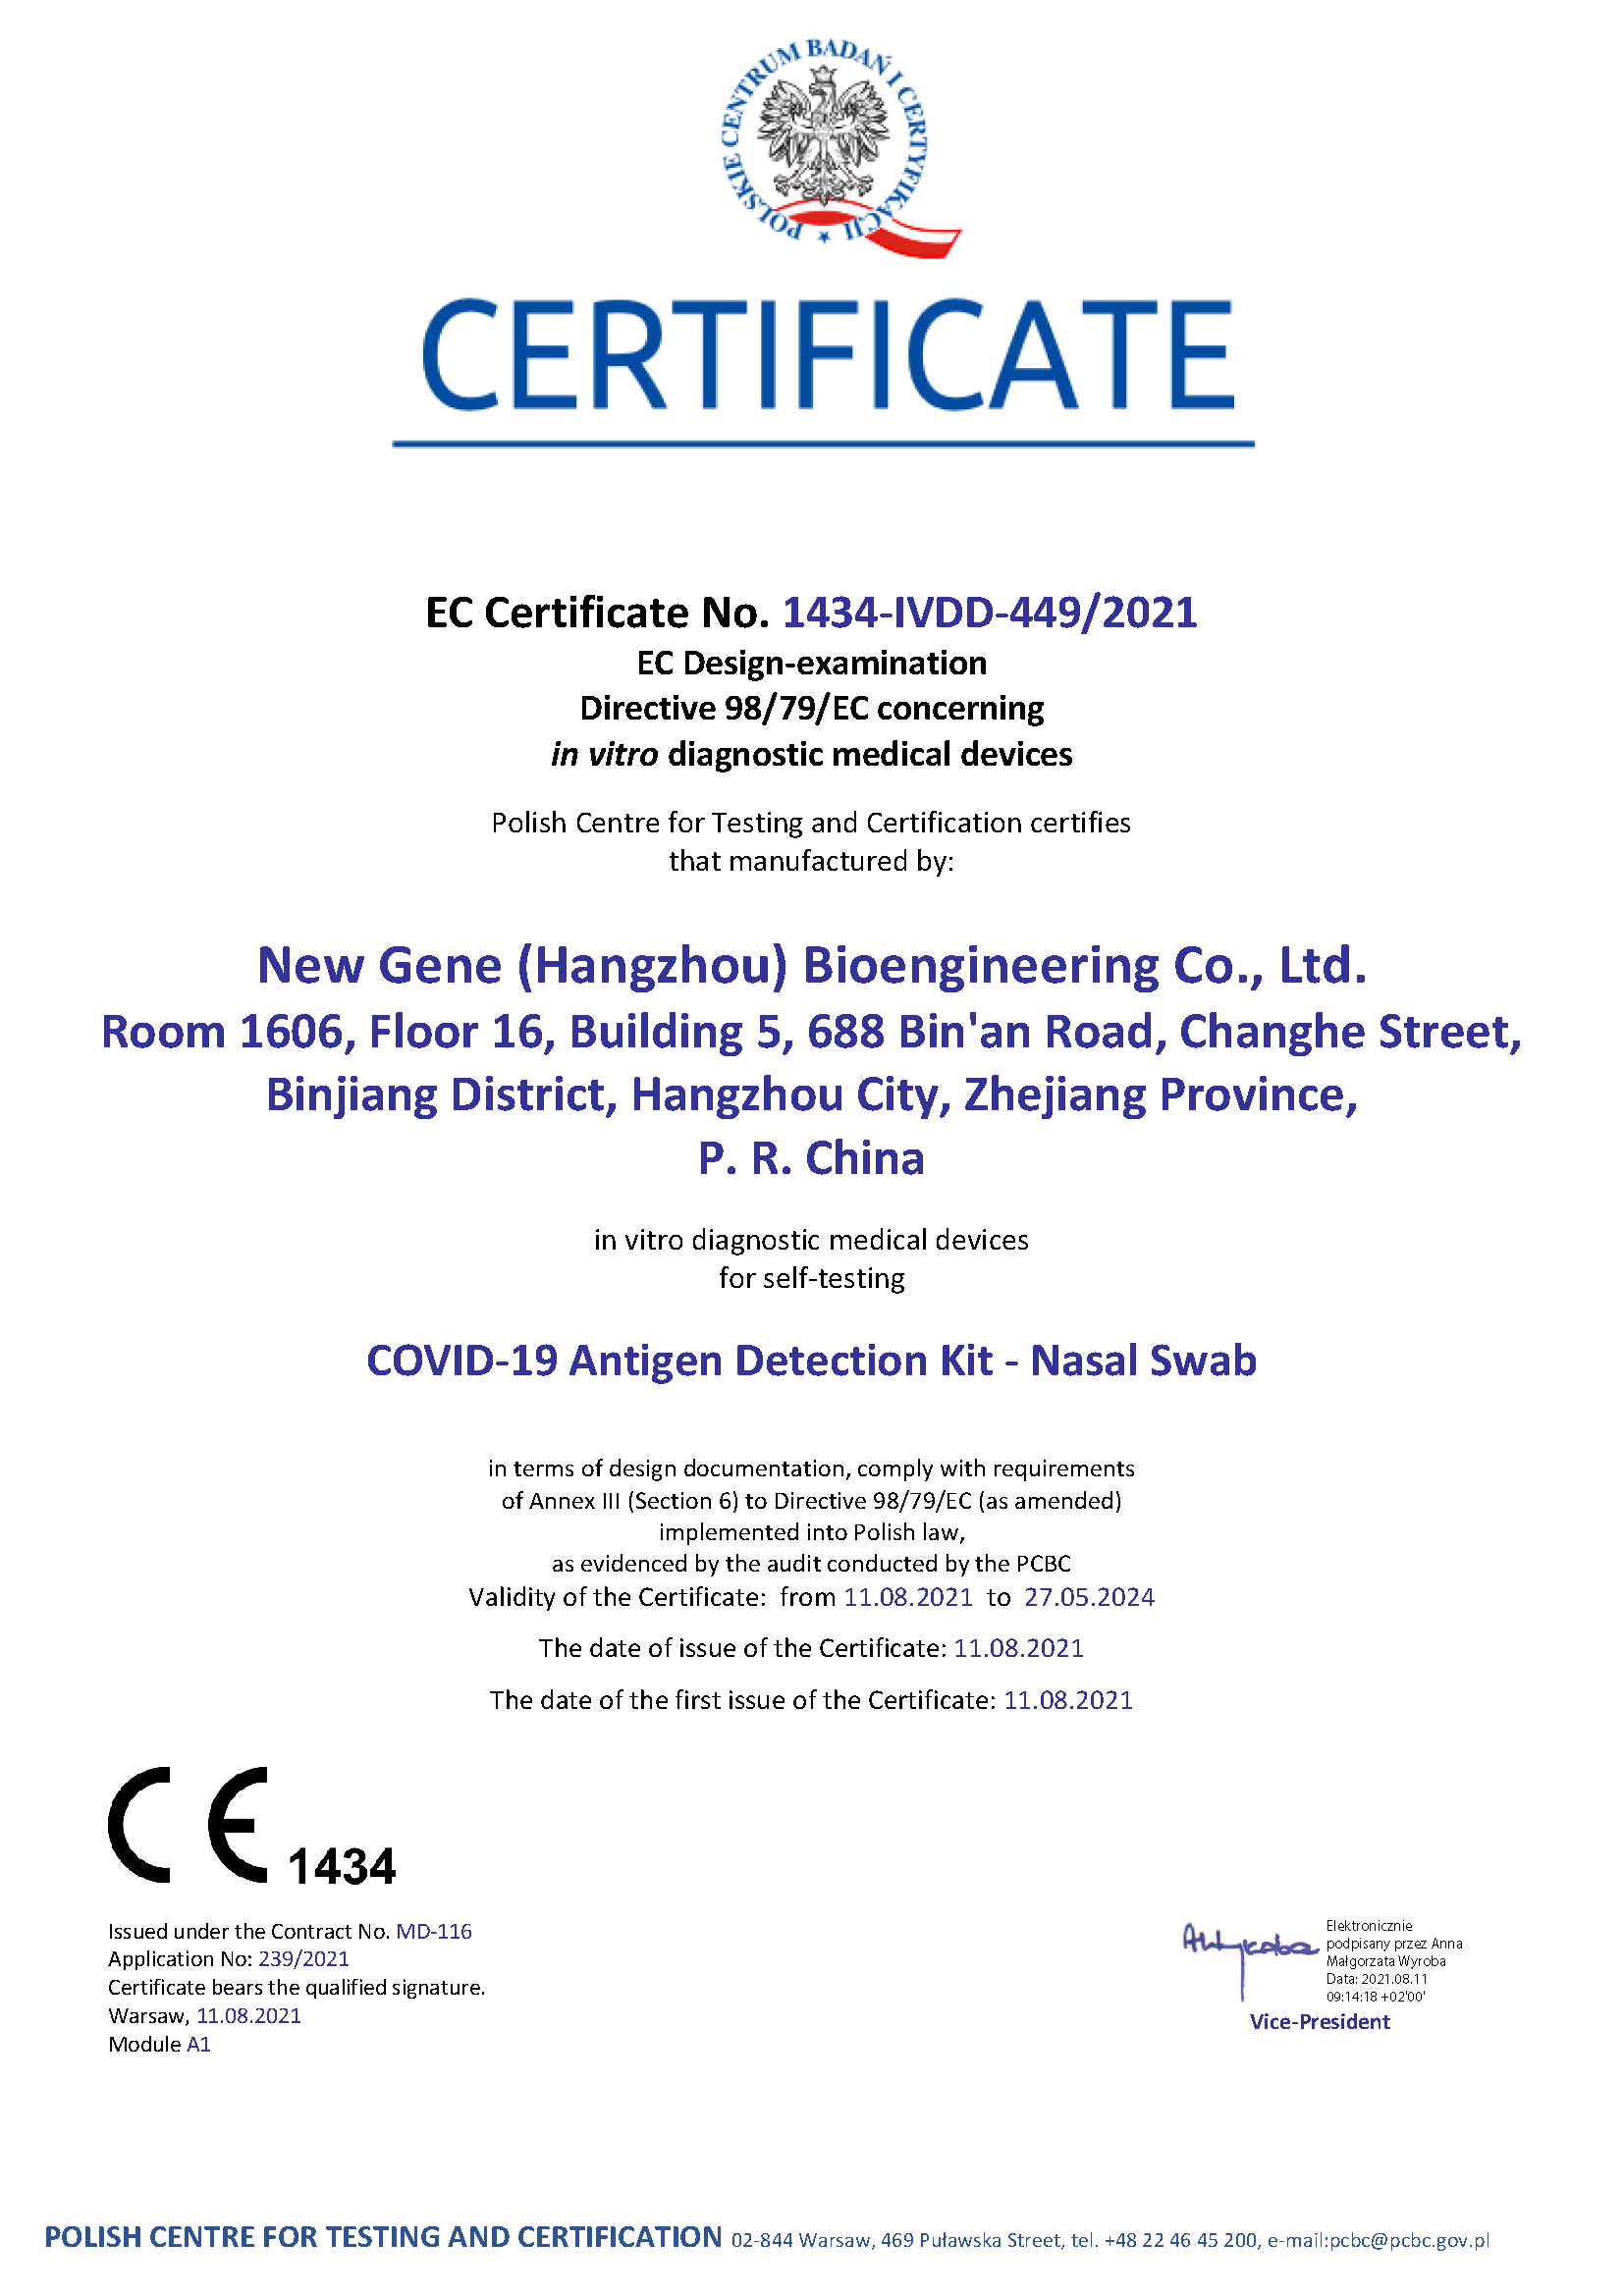 Novo Kit de Detecção de Antígenos Gene COVID-19 - Certificado de Autoteste（PCBC 1434)